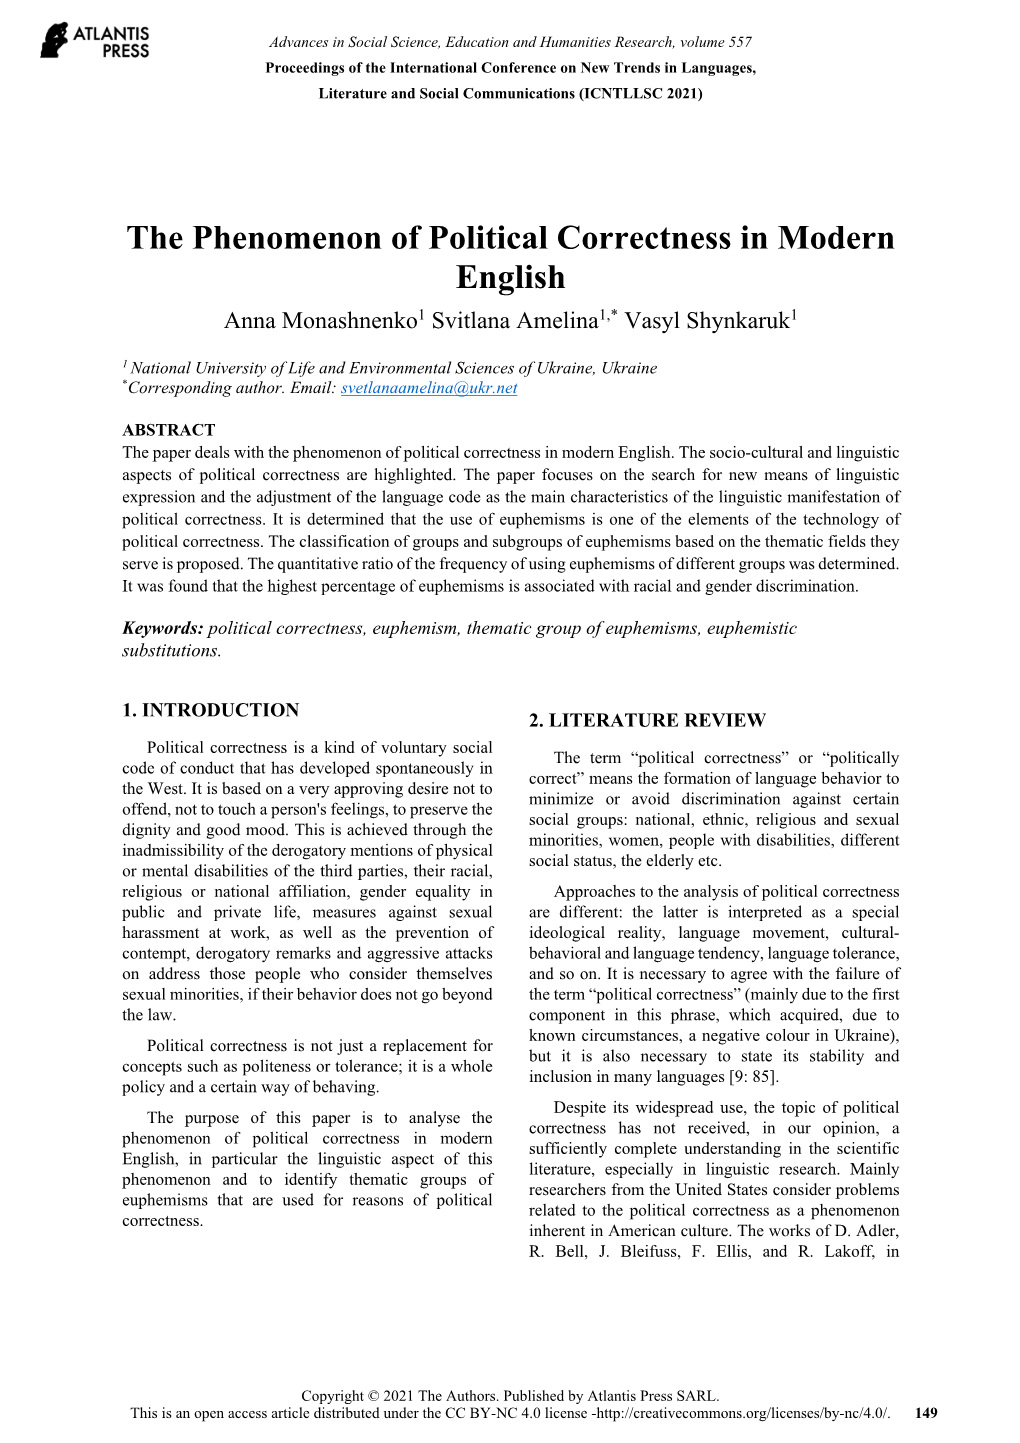 The Phenomenon of Political Correctness in Modern English Anna Monashnenko1 Svitlana Amelina1,* Vasyl Shynkaruk1